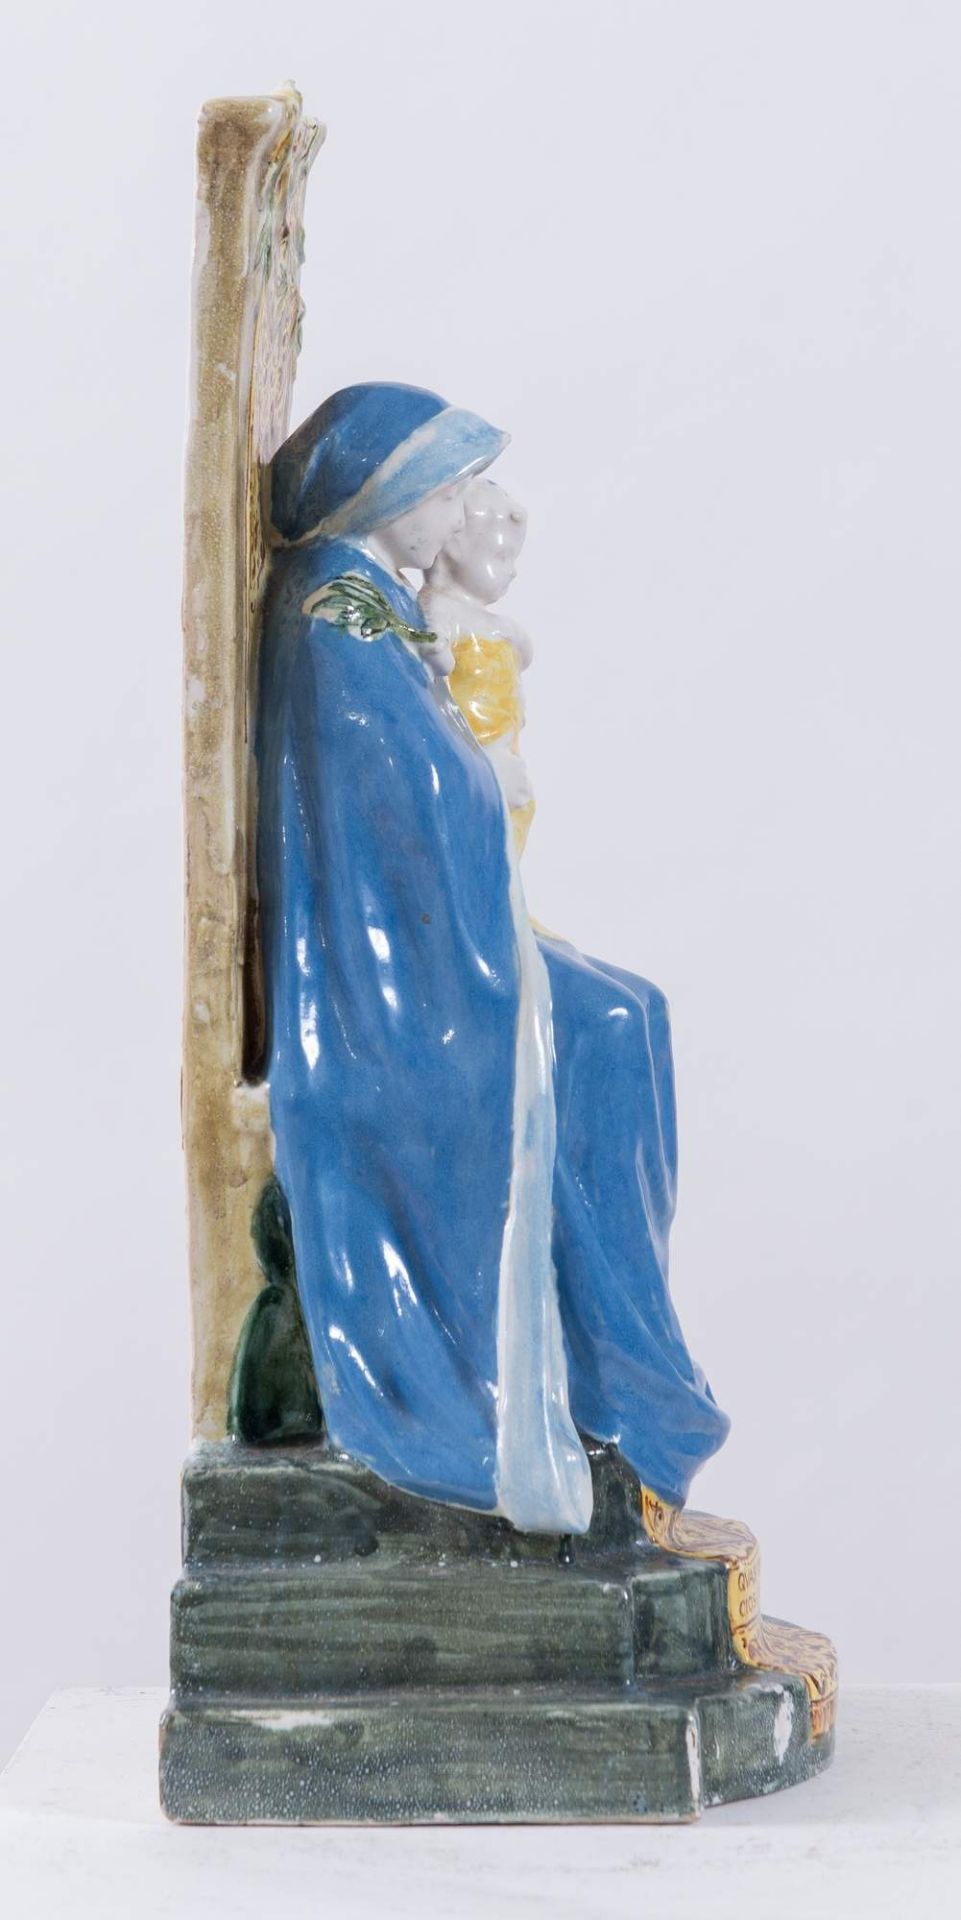 ANGELO MINGHETTI, Bologna, XX secolo. "Madonna in trono", realizzata in ceramica policroma. Cm 39, - Bild 3 aus 5